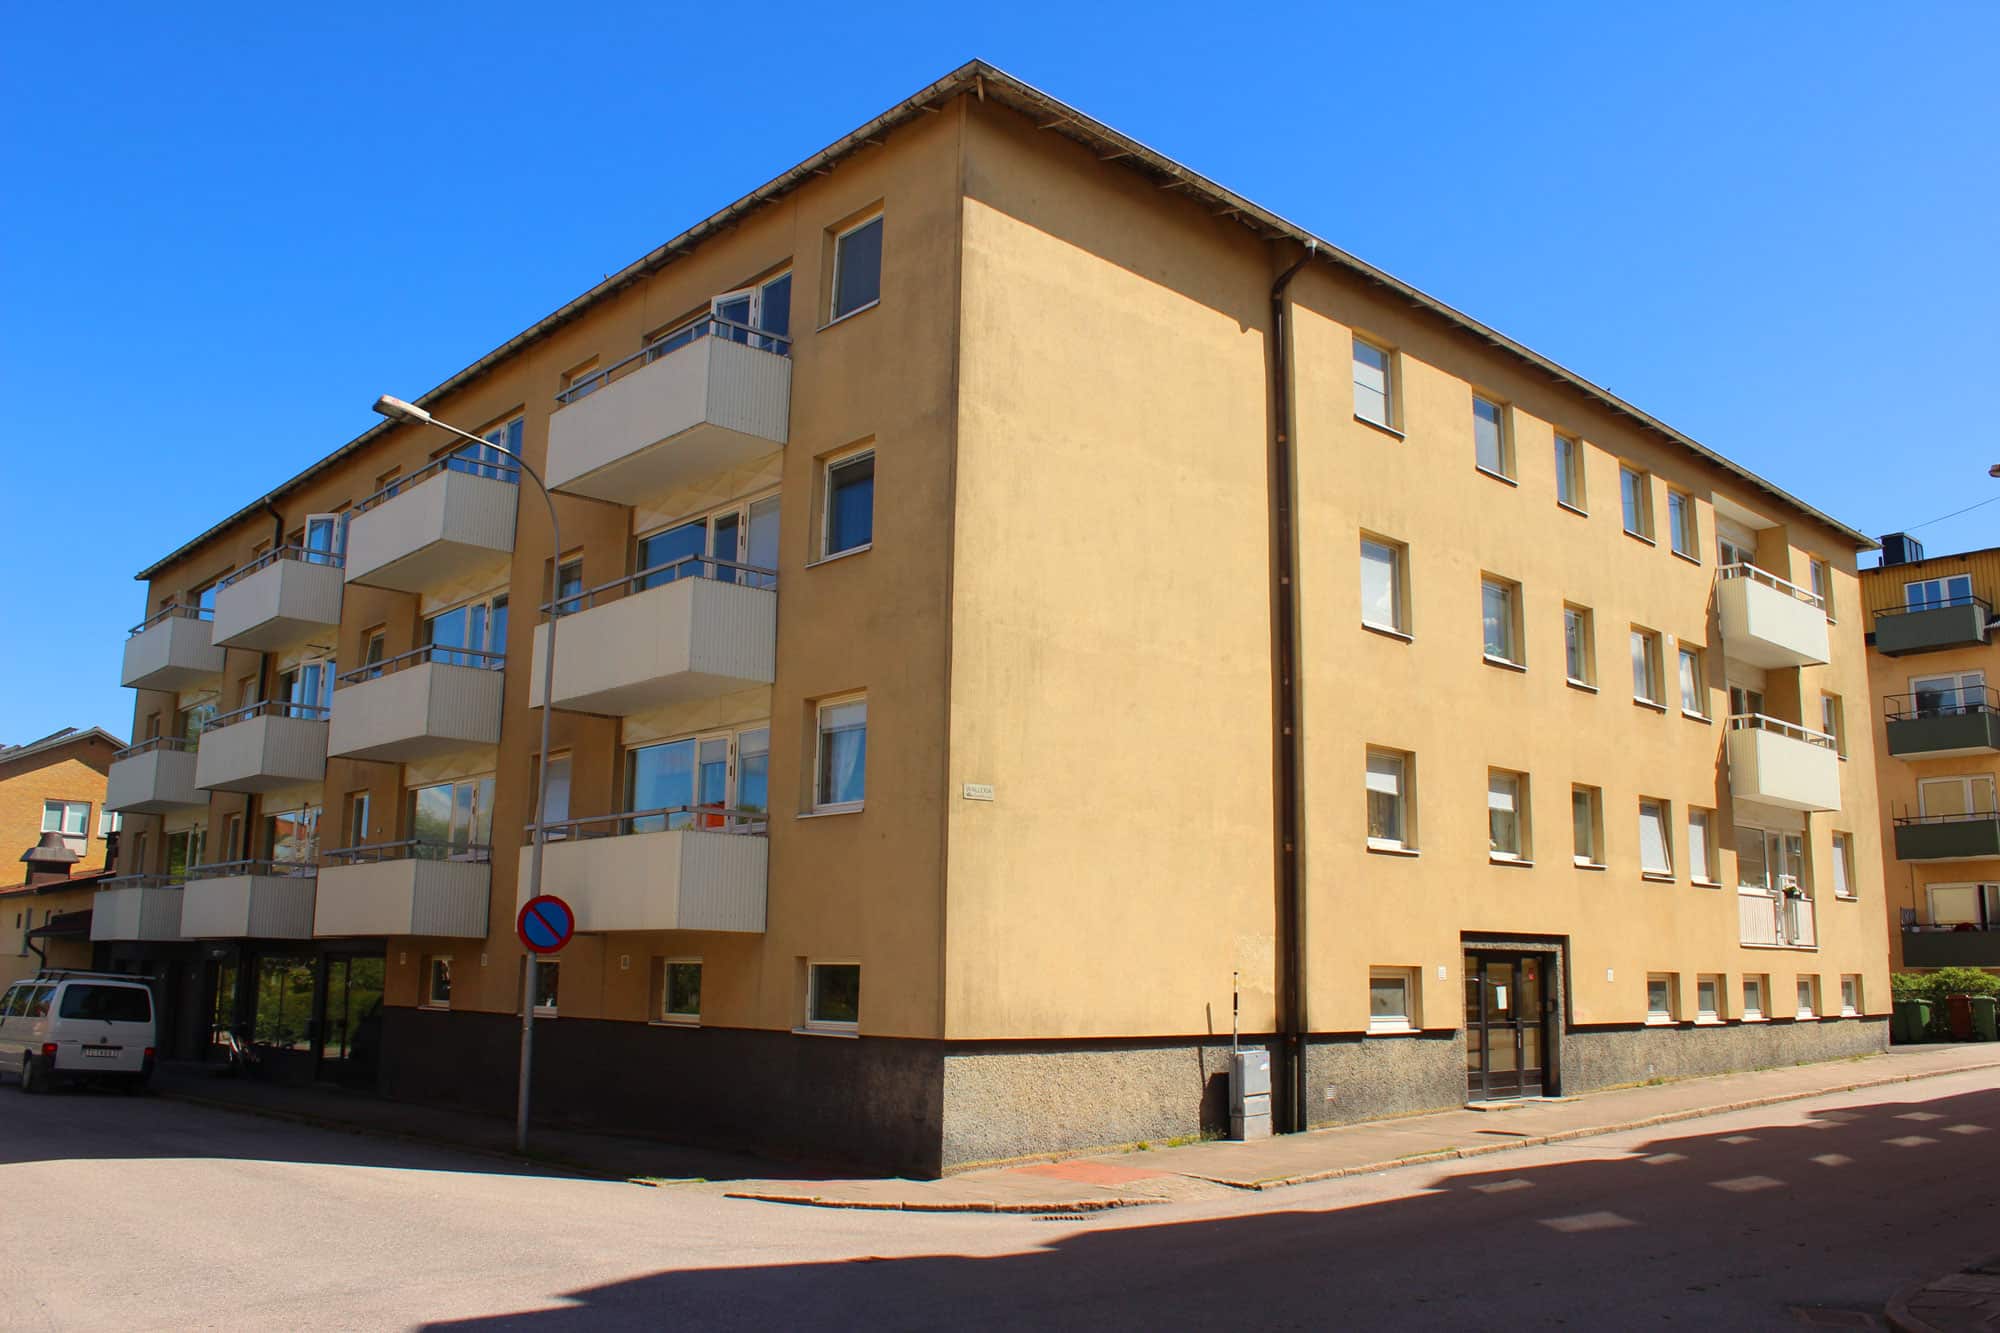 En ledig lokal i Trollhättan och liknande i Vänersborg